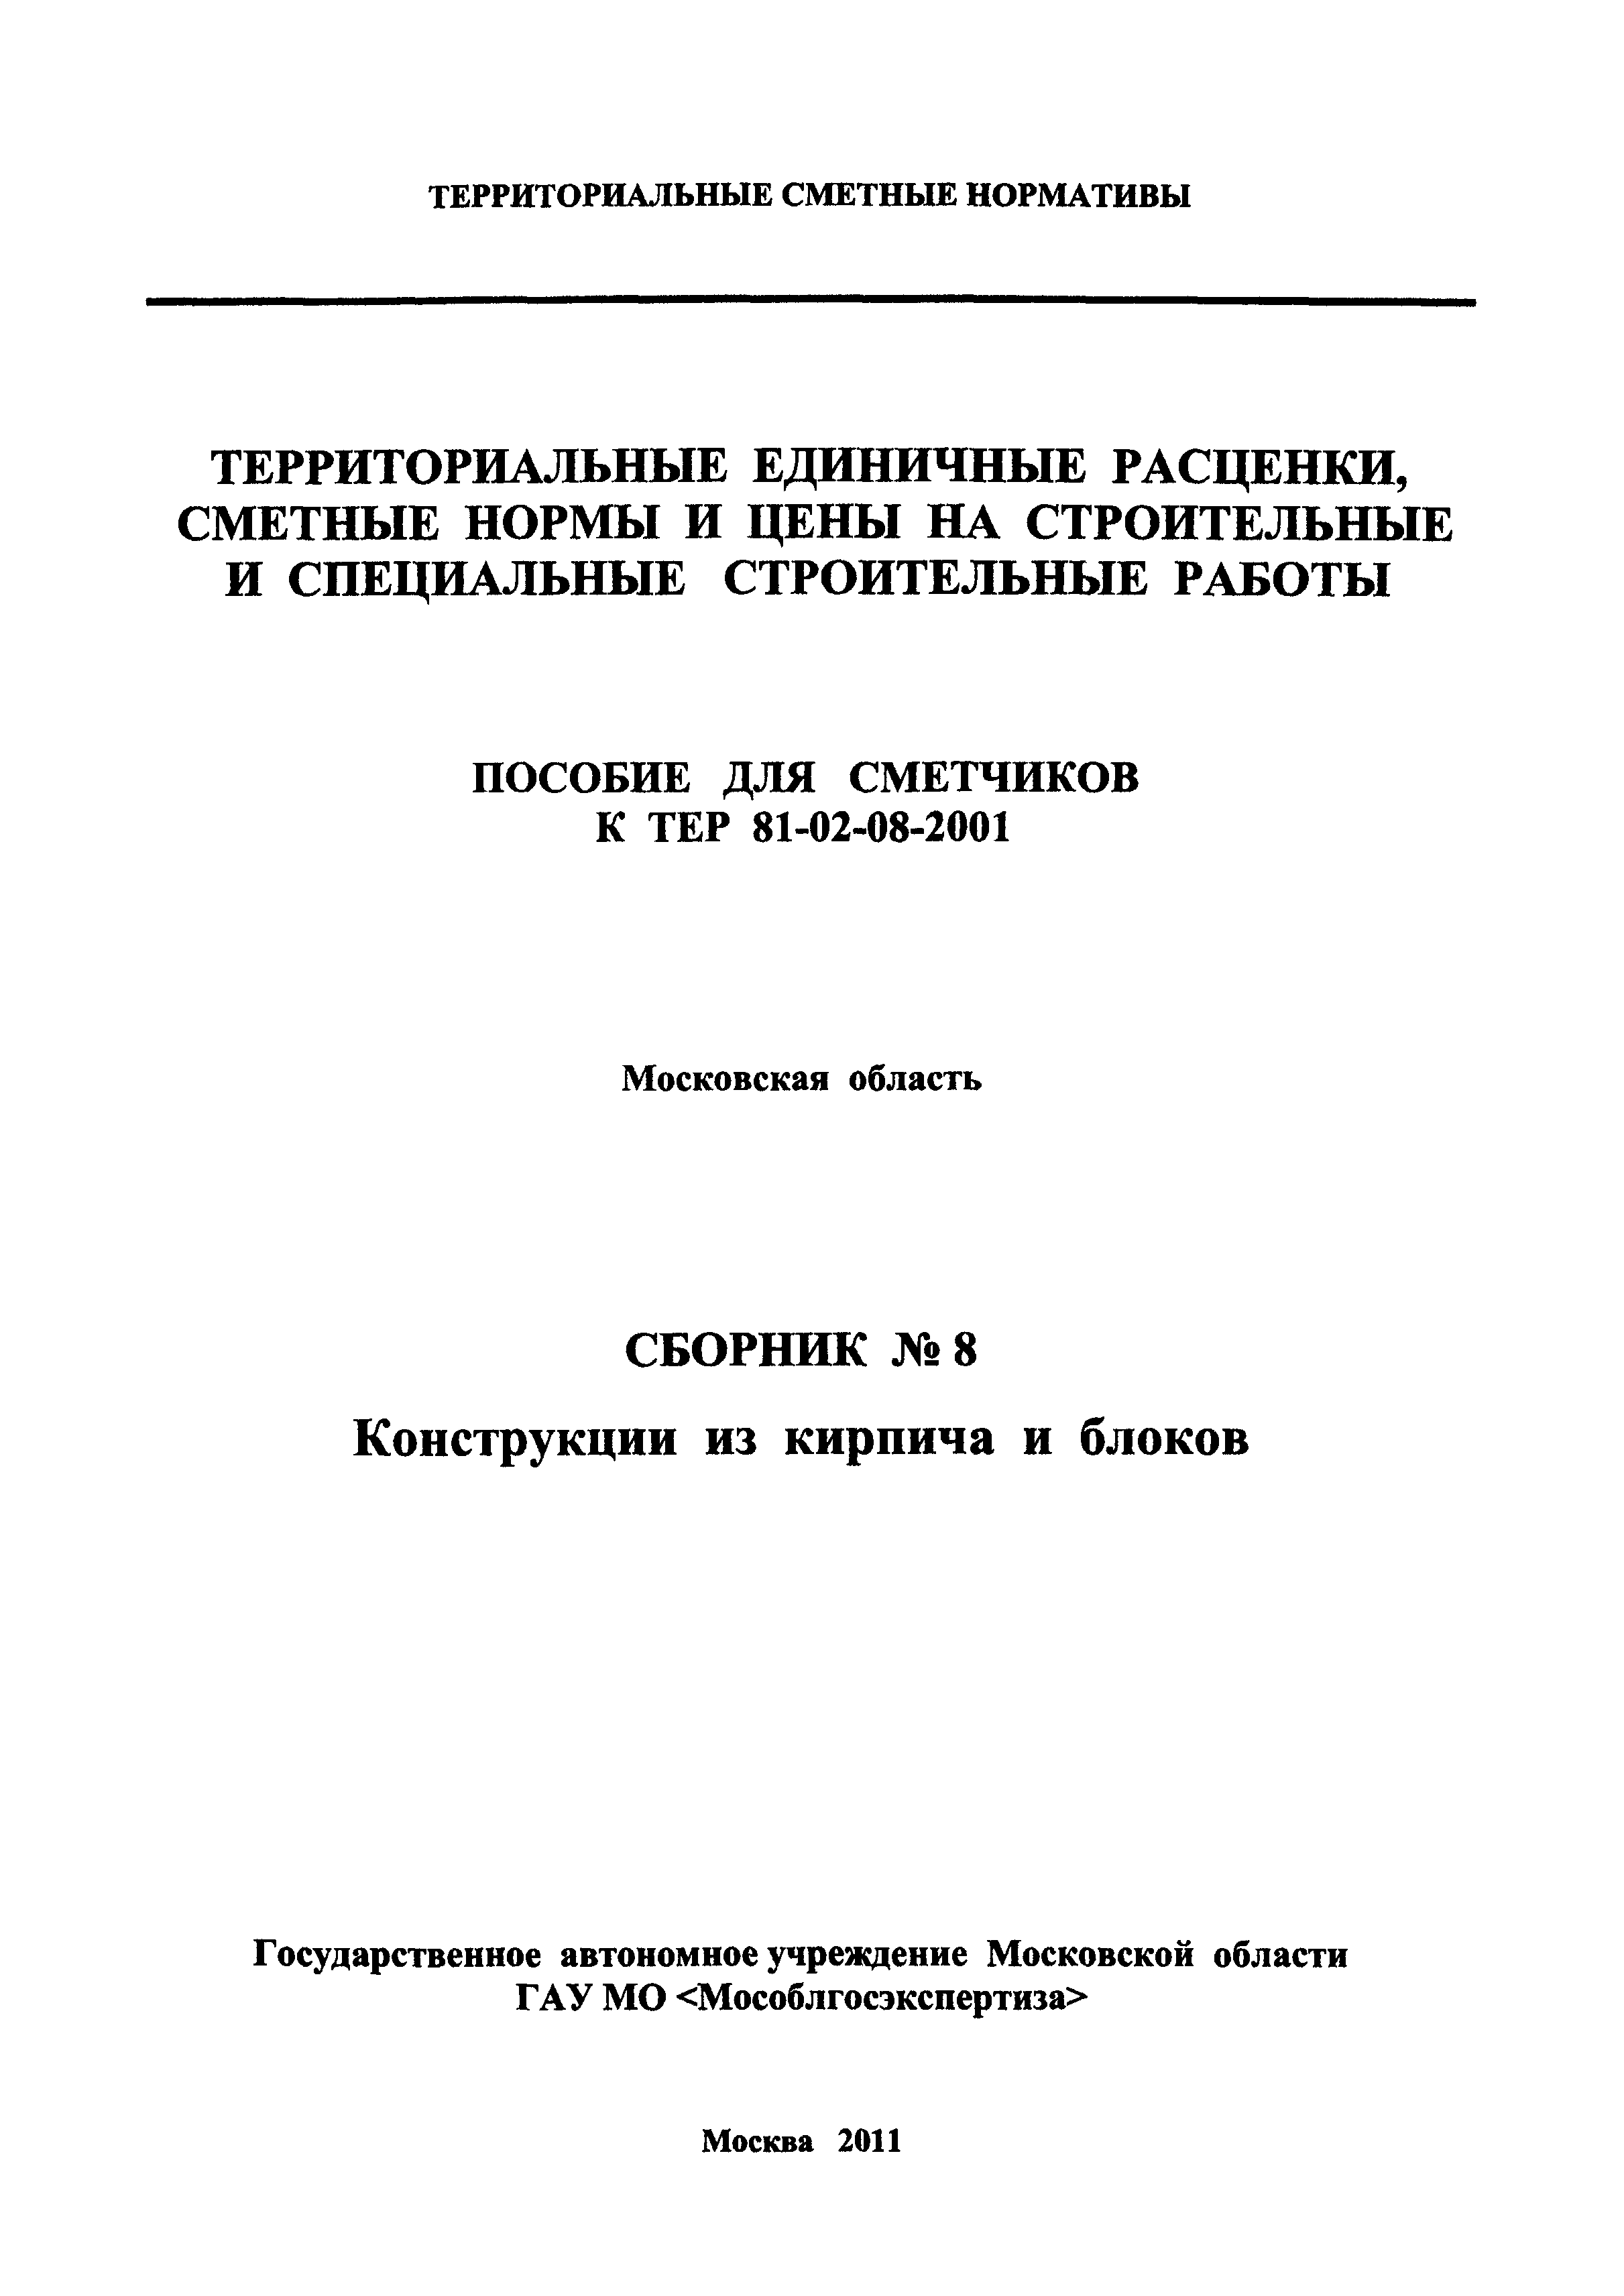 ГЭСНПиТЕР 2001-8 Московской области